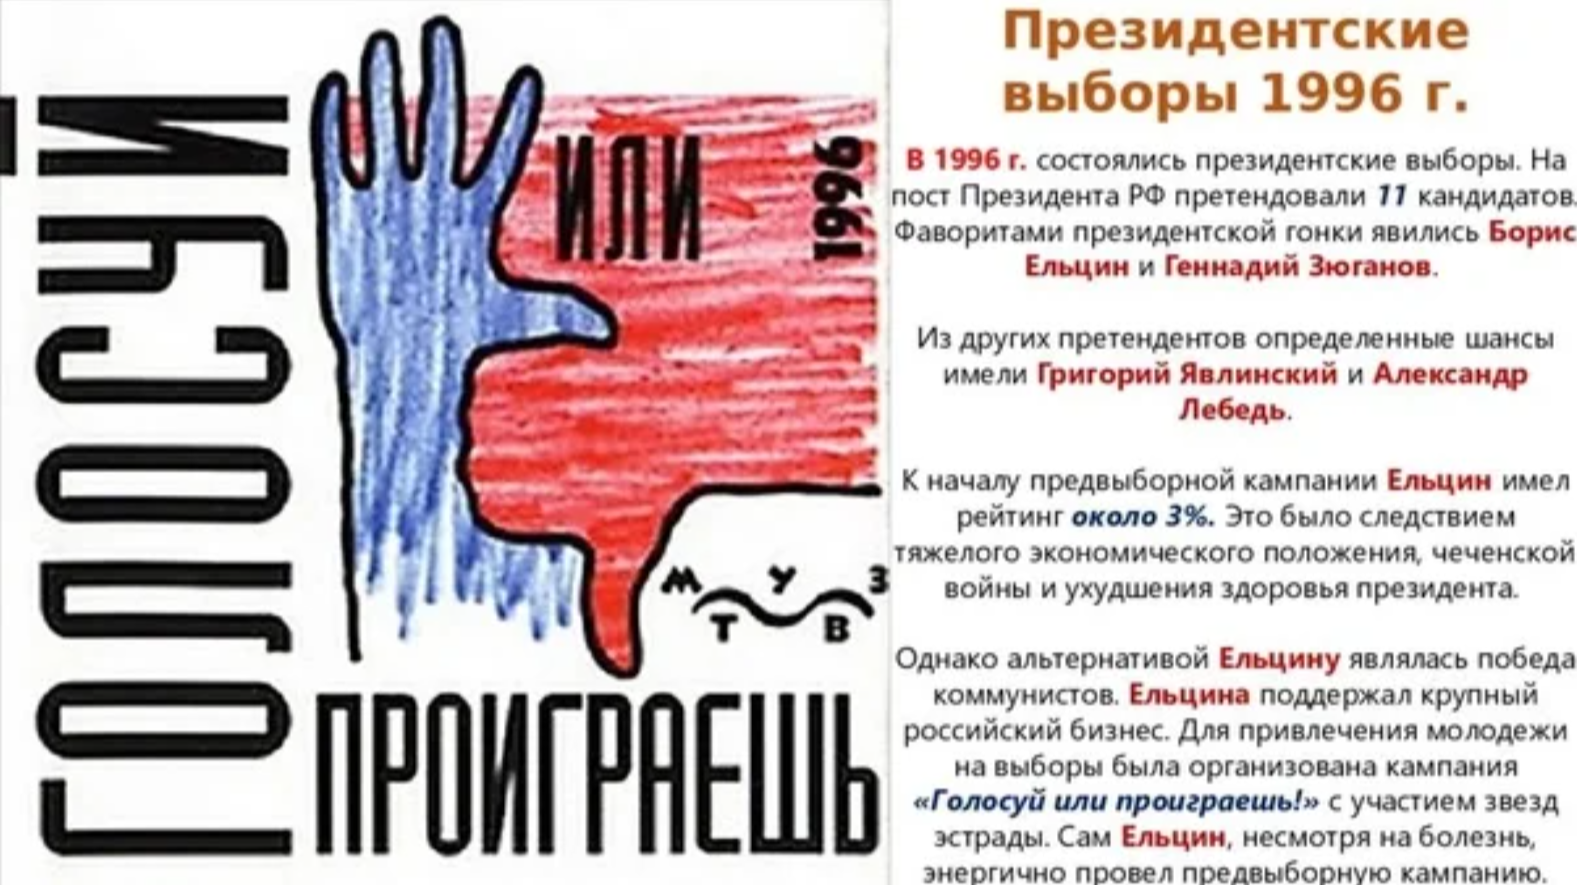 Президентские выборы ельцина. Голосуй или проиграешь Ельцин. Избирательная кампания Ельцина 1996. Голосуй или проиграешь 1996. Голосуй или проиграешь плакат.